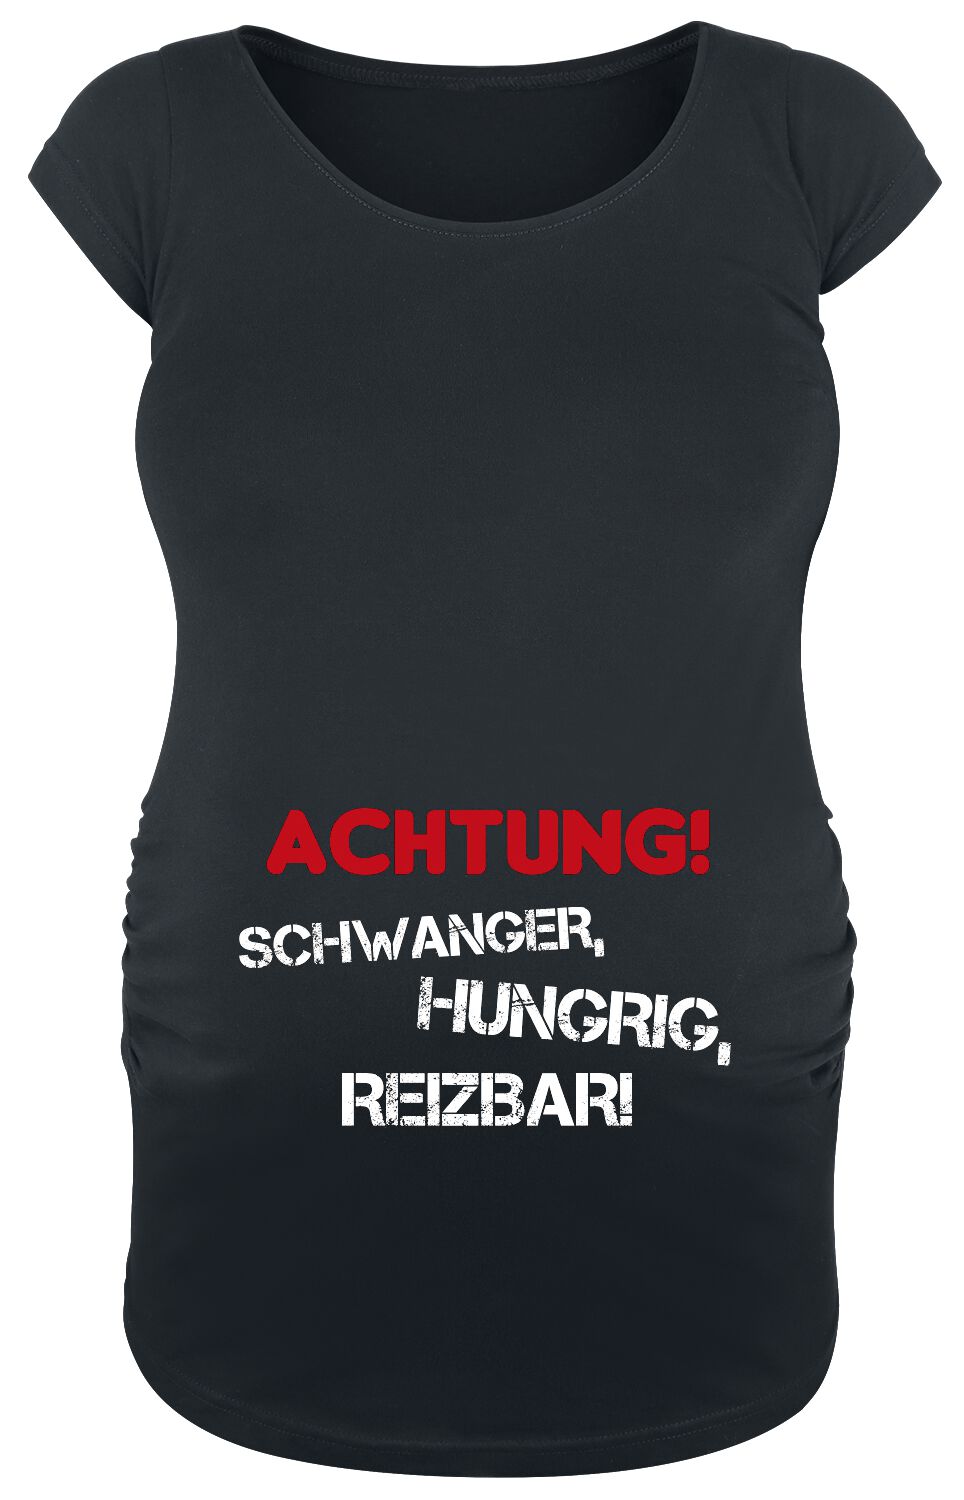 Umstandsmode Achtung! Schwanger, Hungrig, Reizbar! T-Shirt schwarz in S